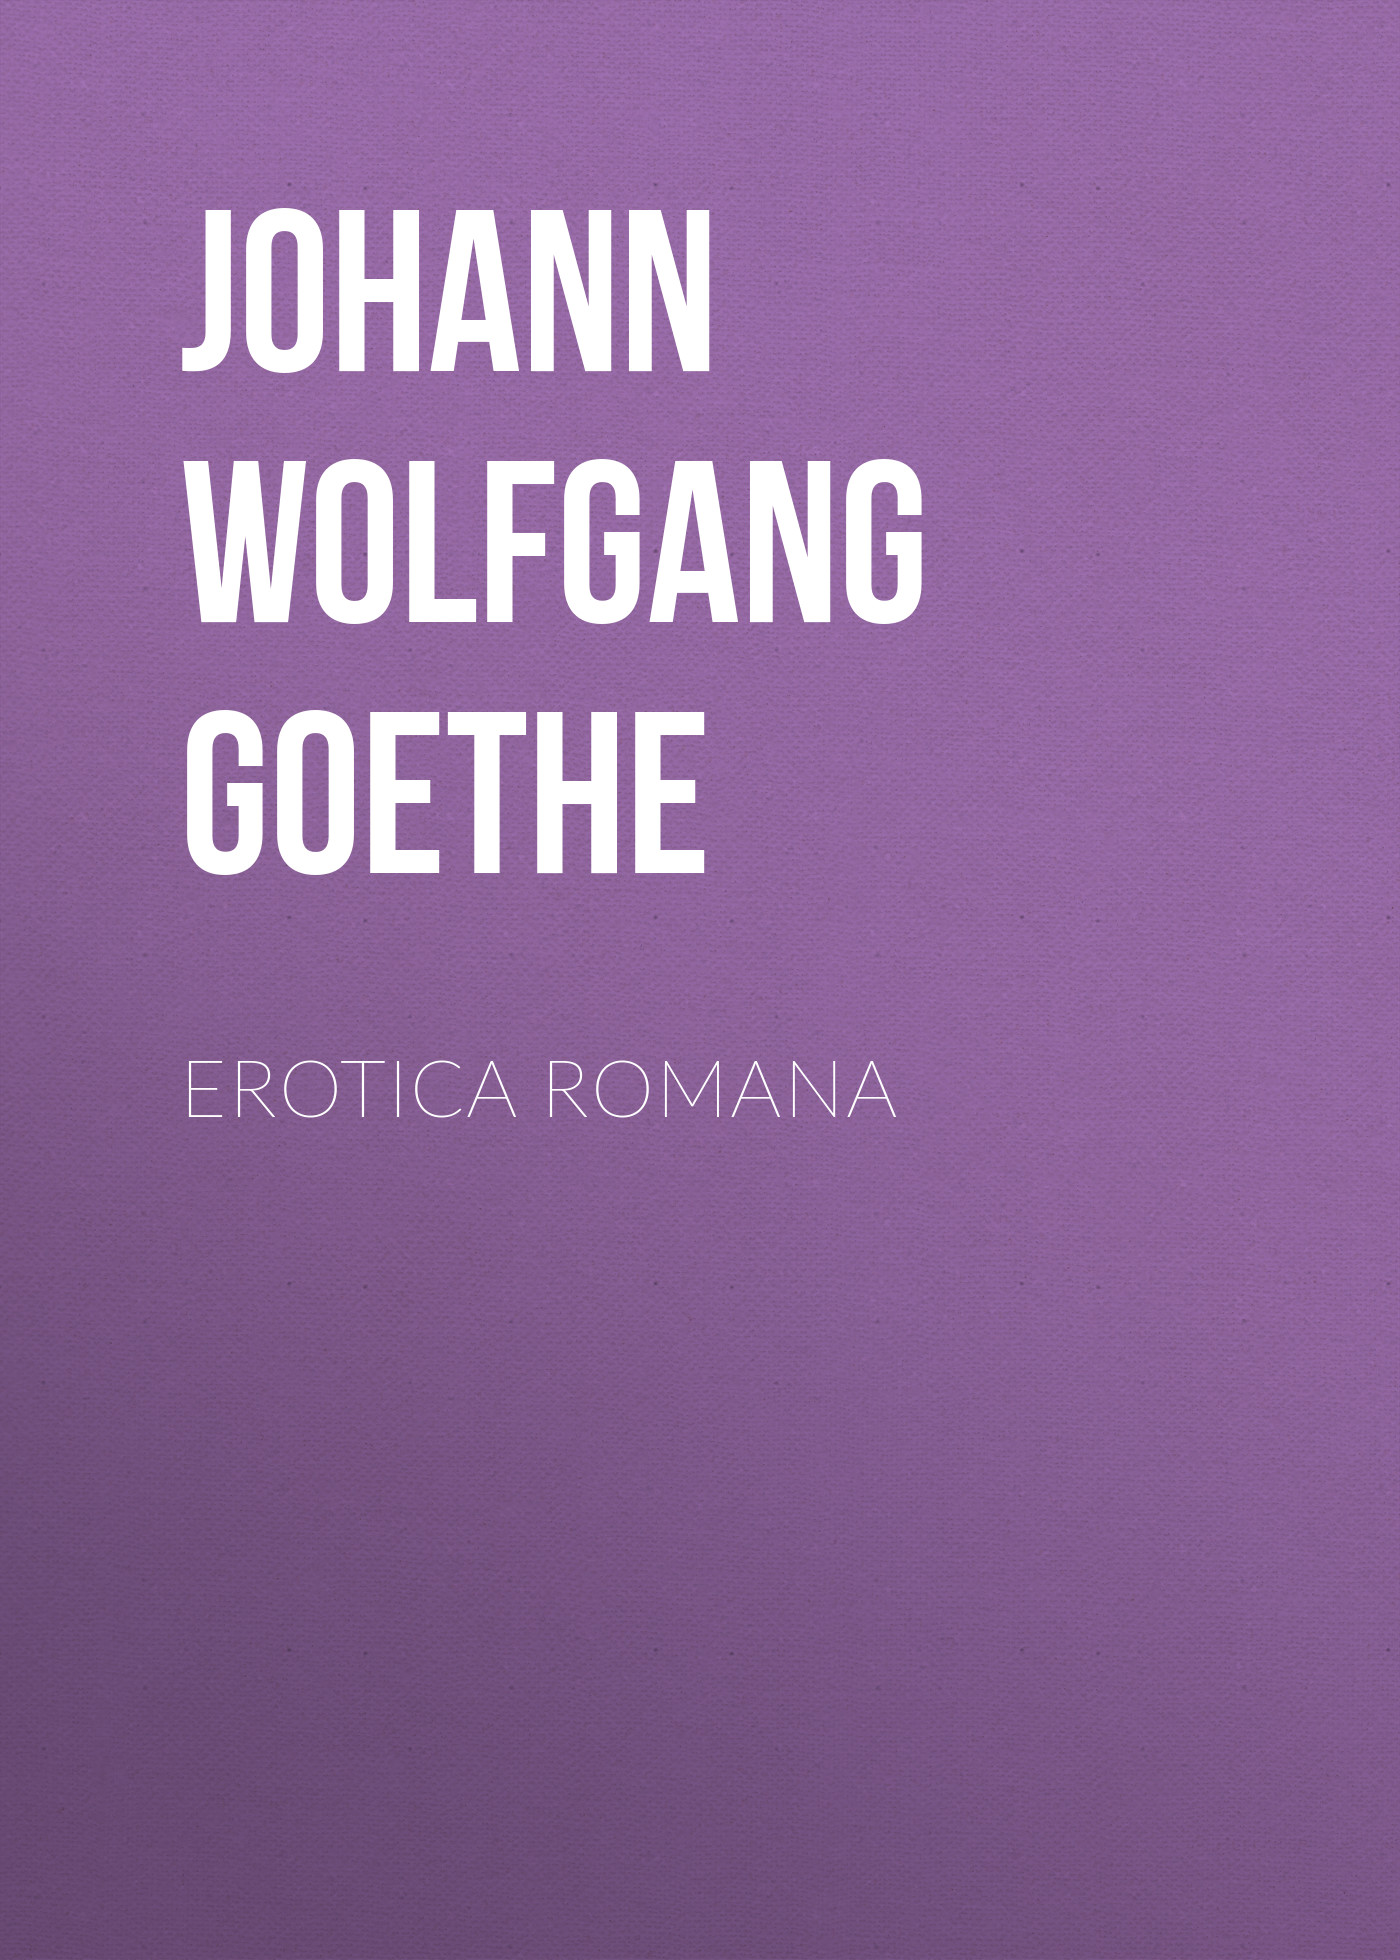 Книга Erotica Romana из серии , созданная Johann von Goethe, может относится к жанру Зарубежная старинная литература, Зарубежная классика. Стоимость электронной книги Erotica Romana с идентификатором 25202759 составляет 0 руб.